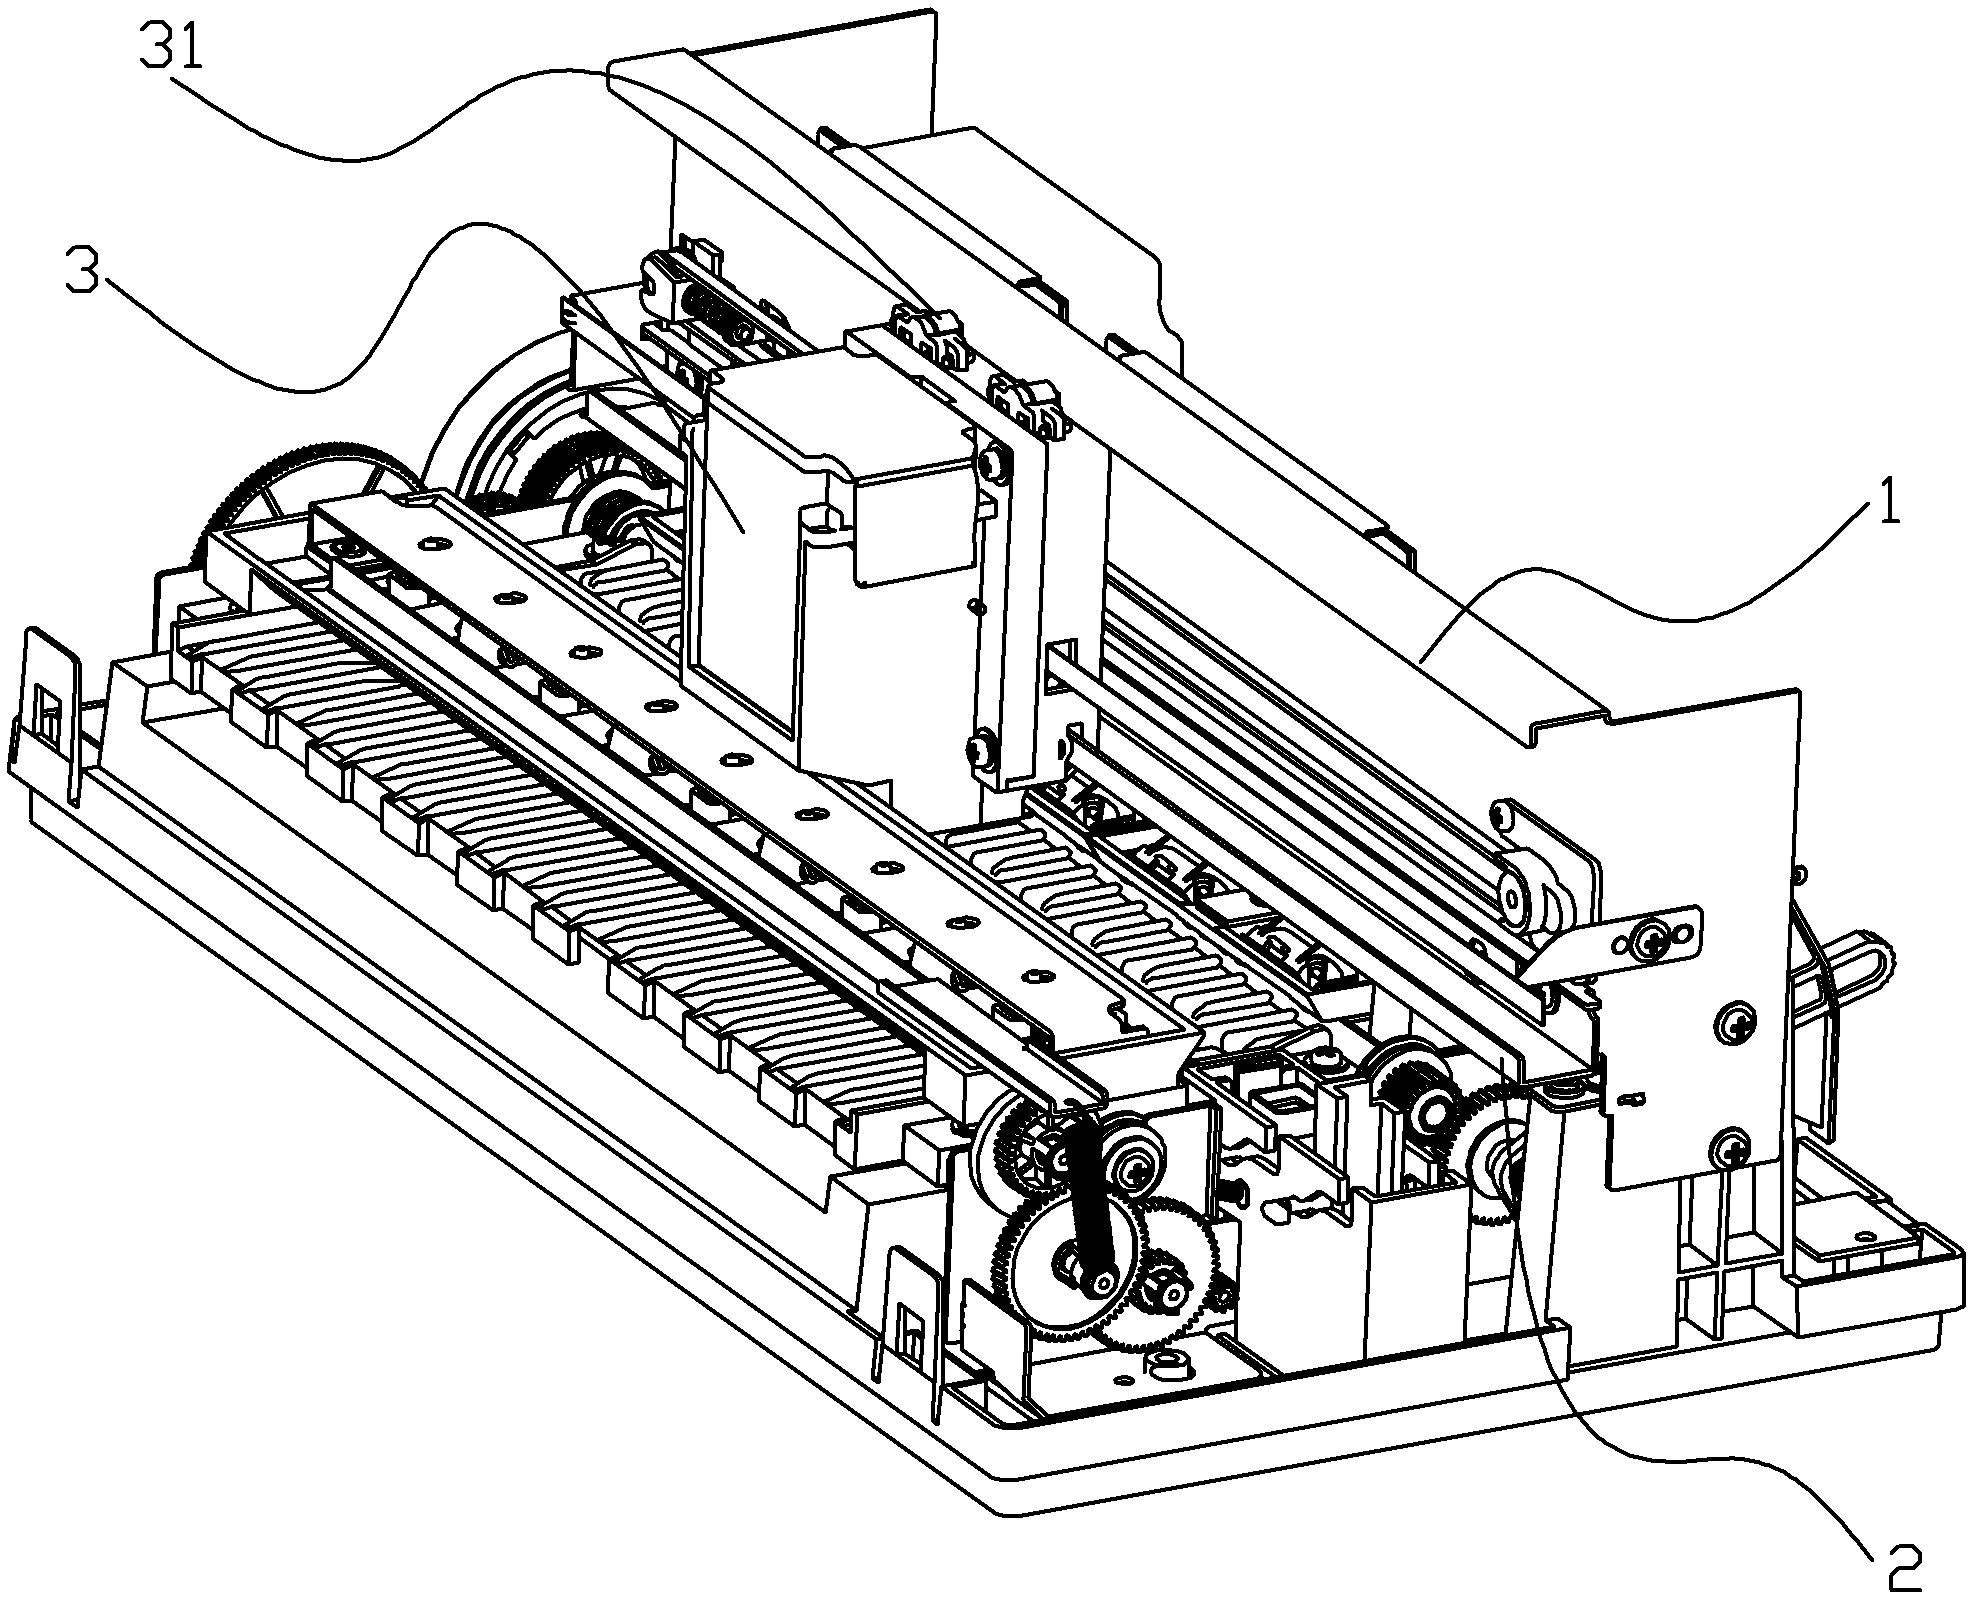 Printer carriage guiding mechanism